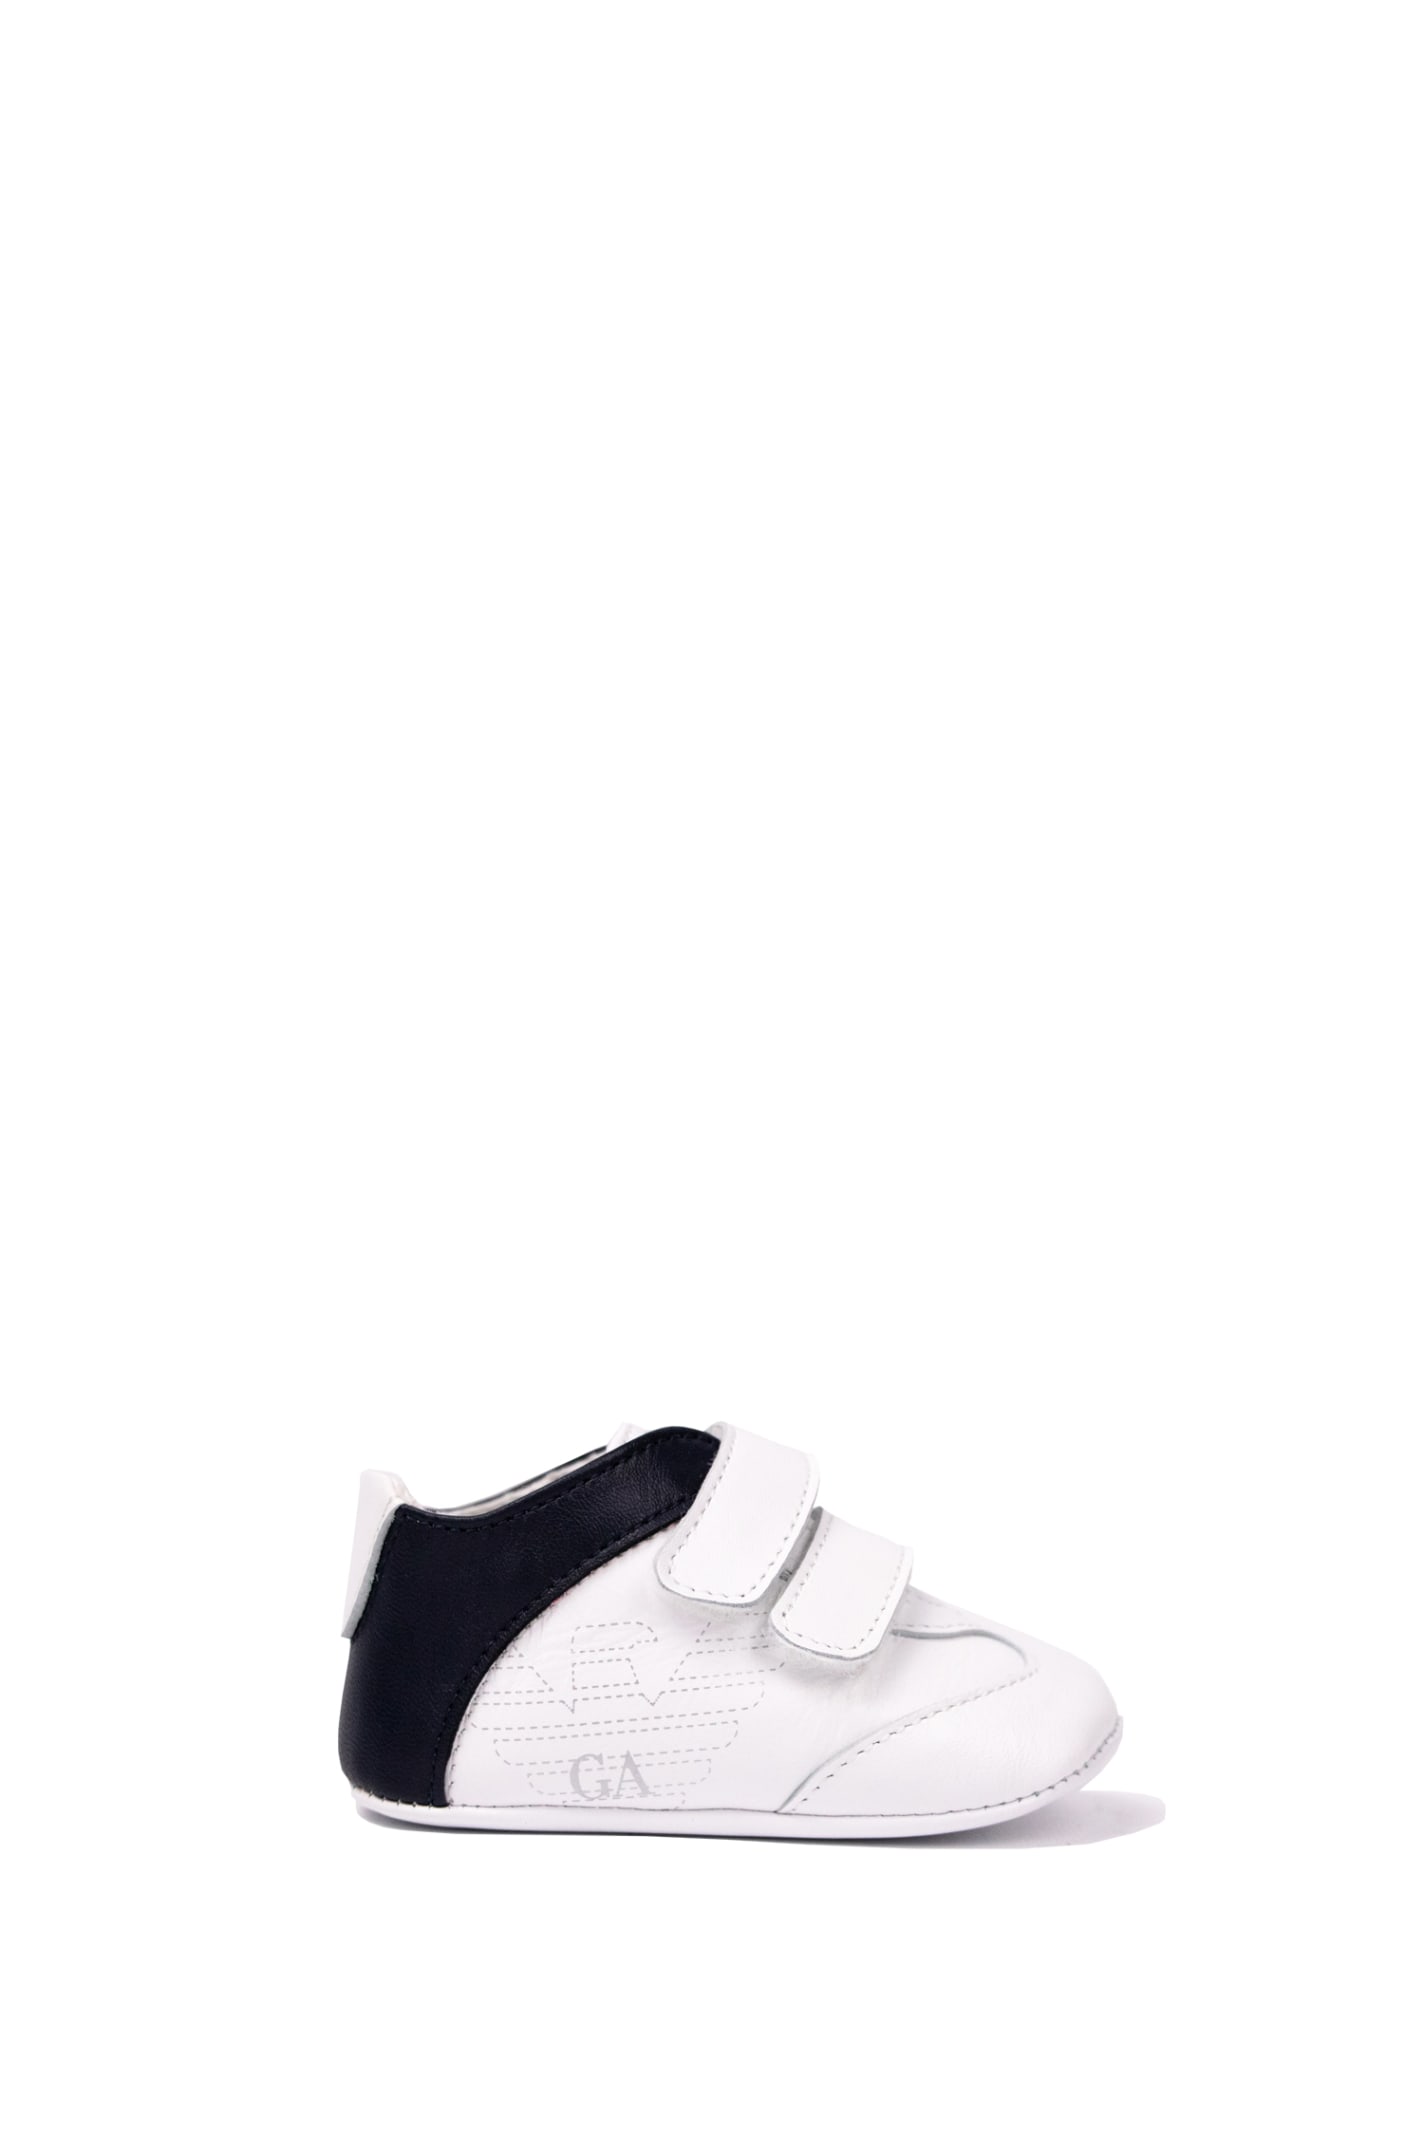 Emporio Armani Kids' Cradle Sneakers In White